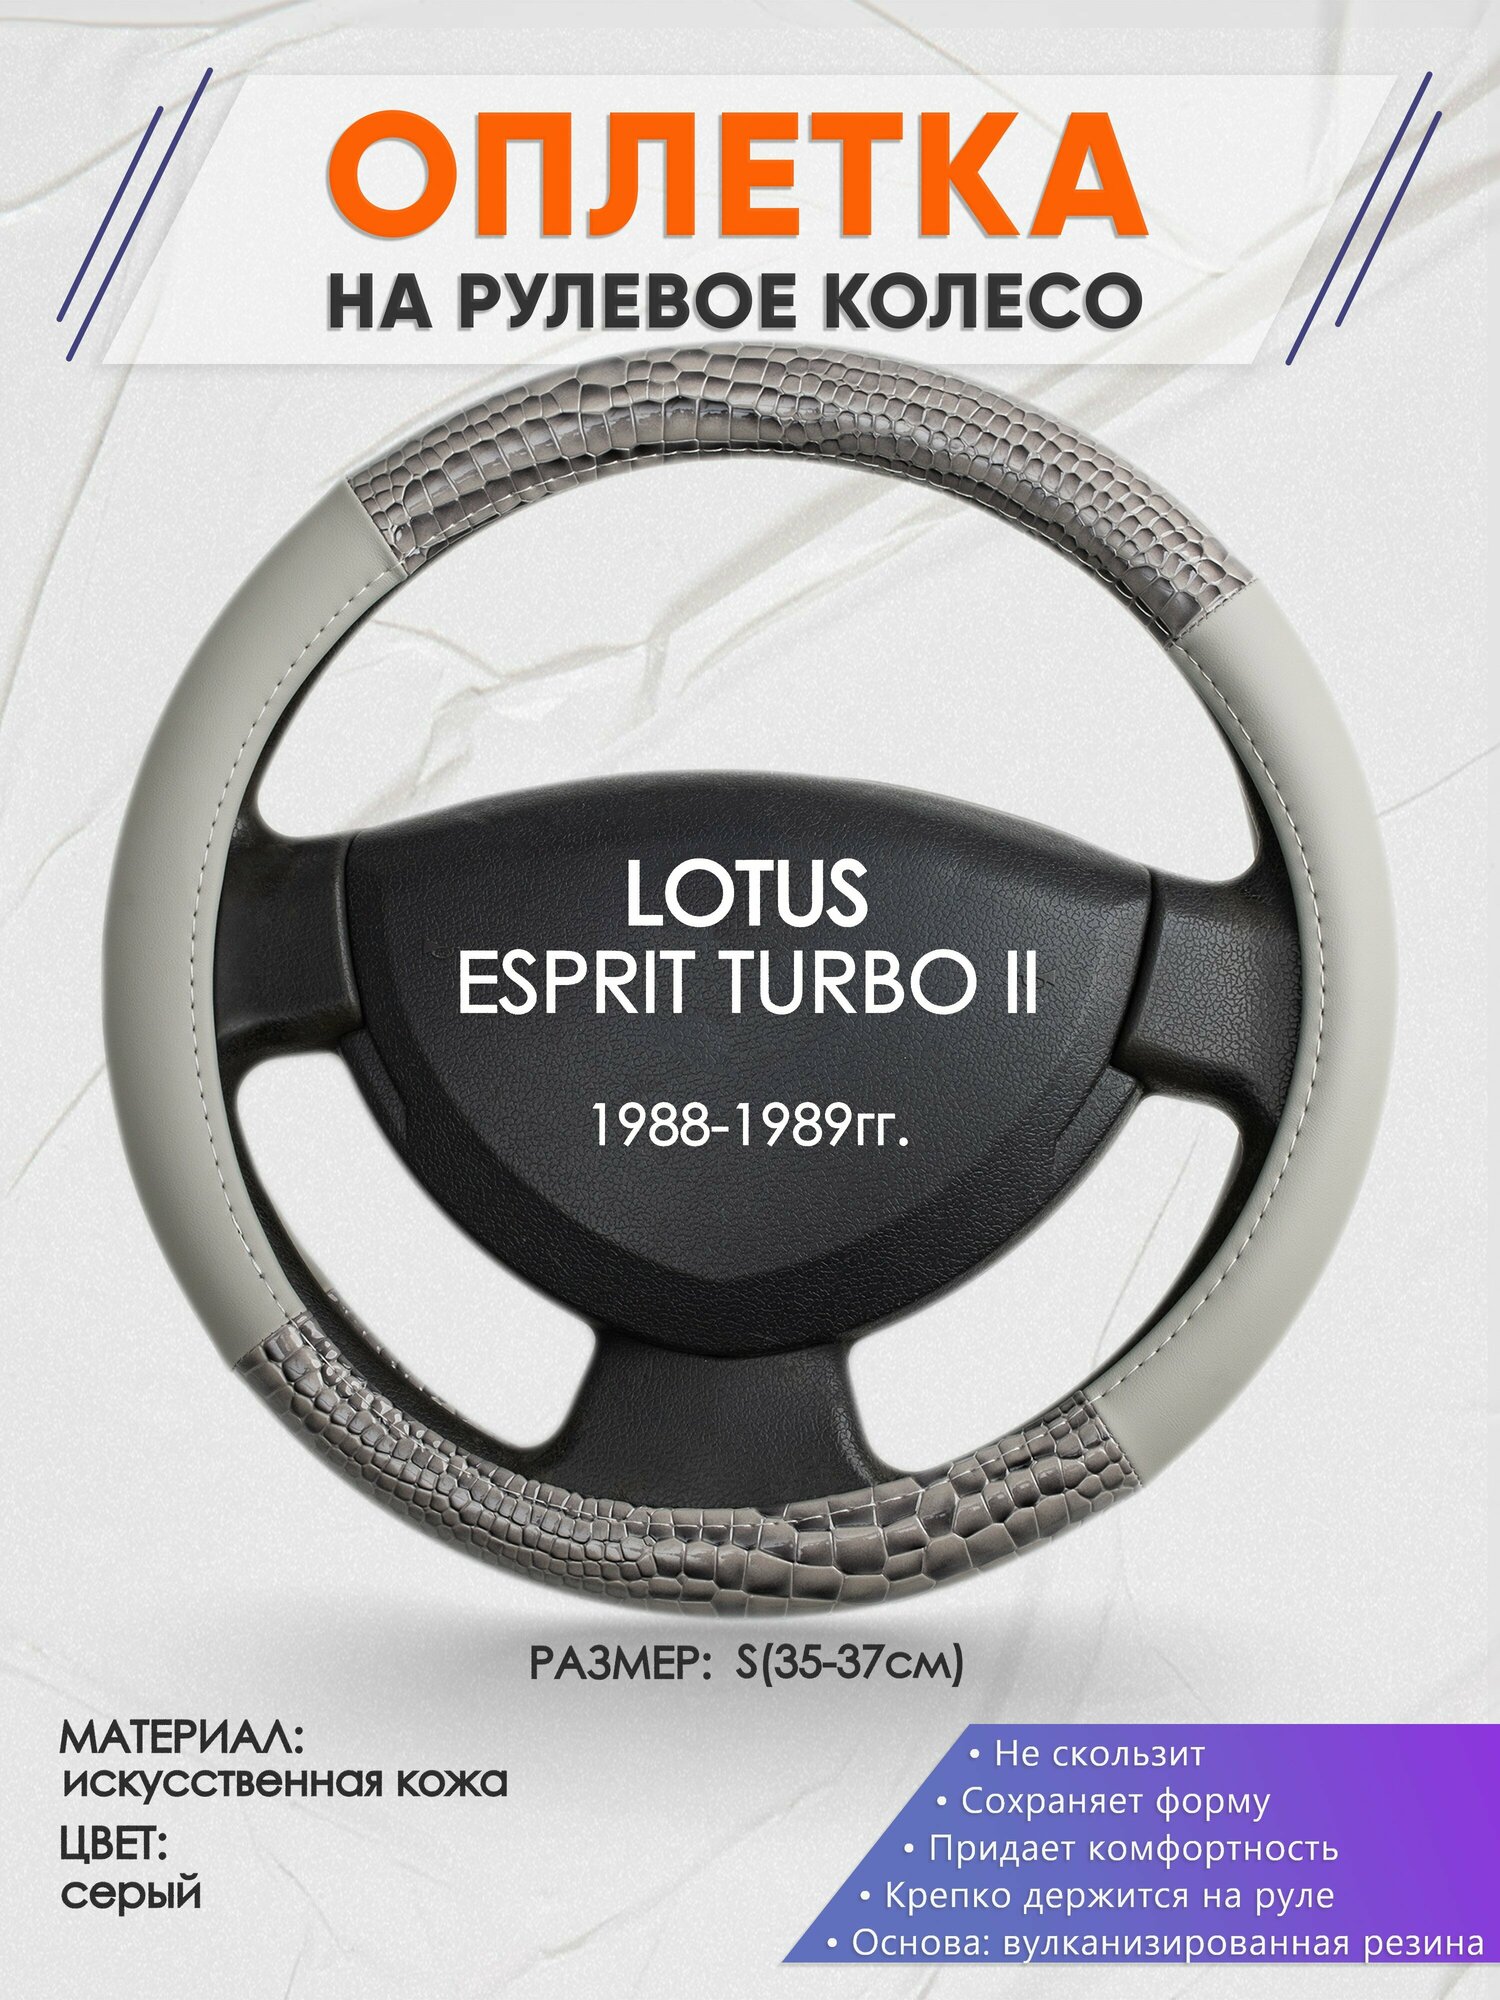 Оплетка на руль для LOTUS ESPRIT TURBO 2(Лотус Еспирит) 1988-1989, S(35-37см), Искусственная кожа 84